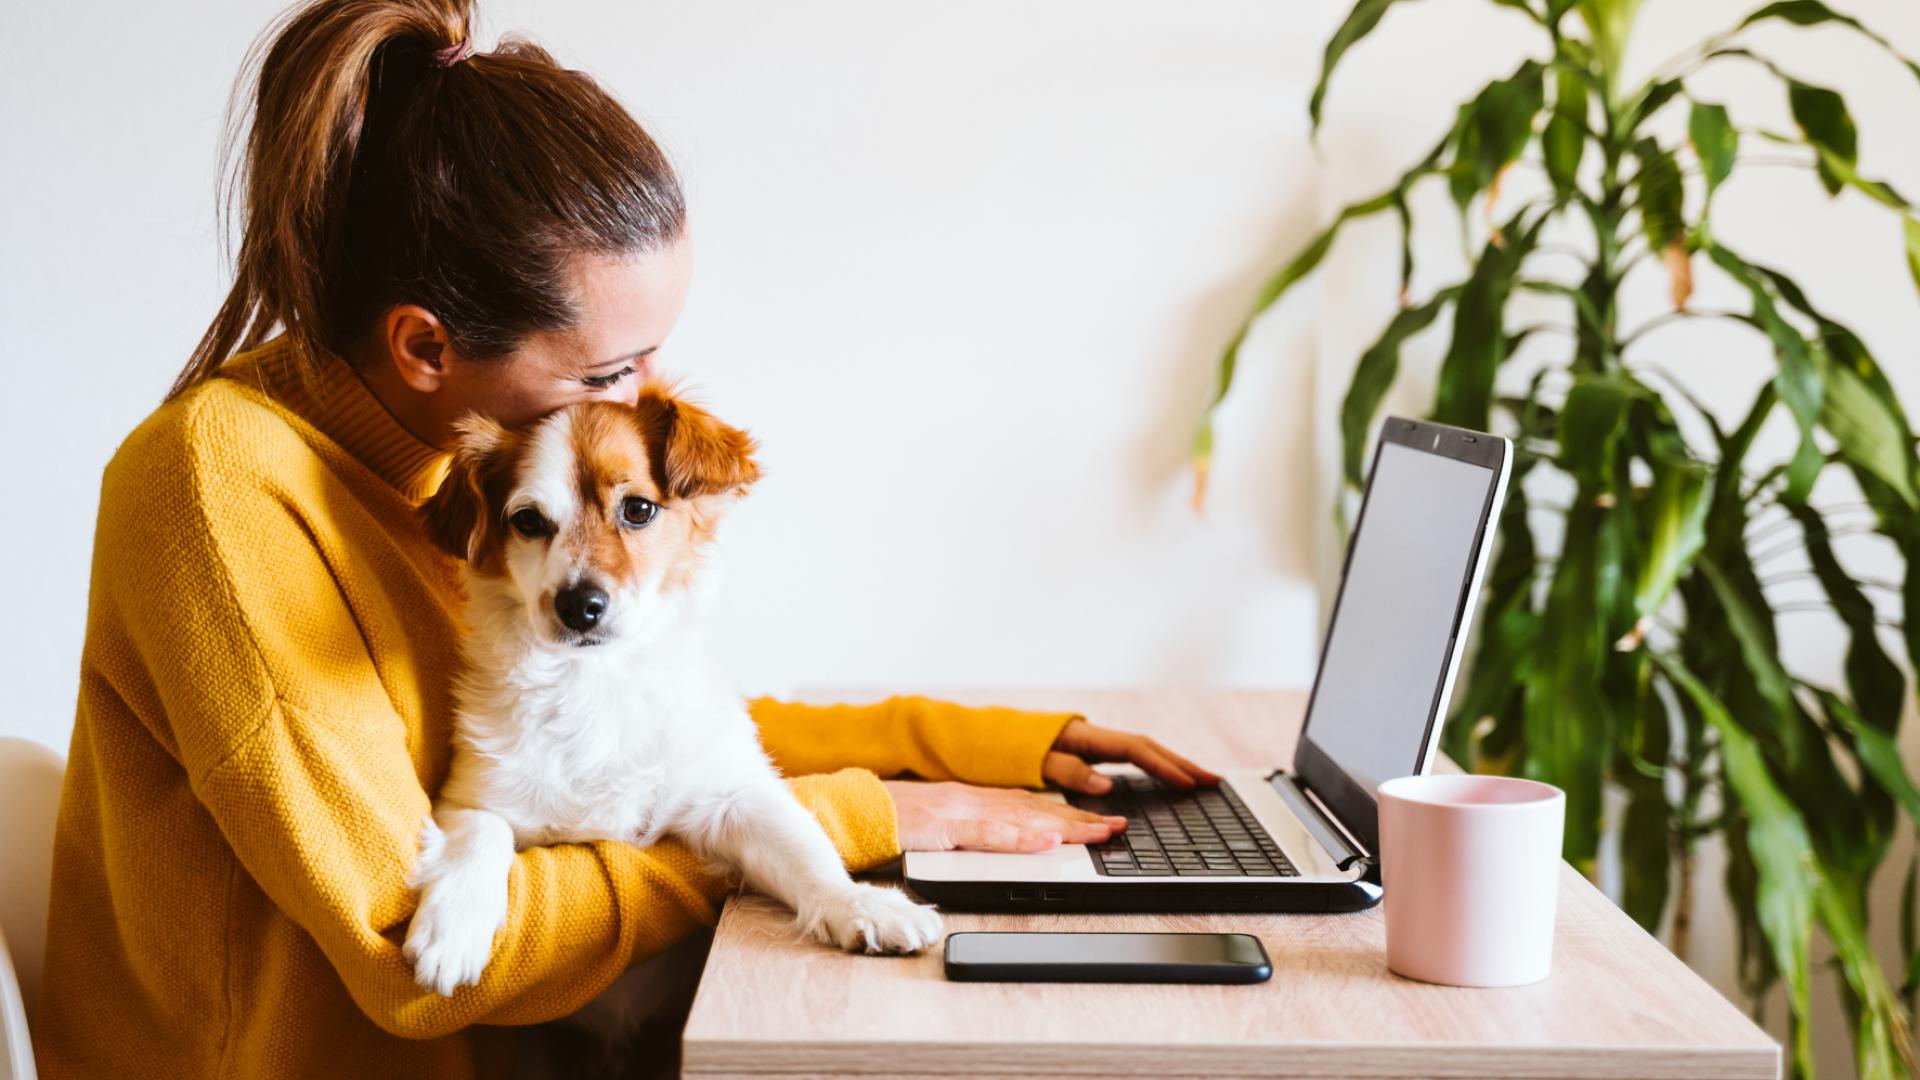 Eine junge Frau sitzt im Home-Office am Schreibtisch und tippt ihren Lebenslauf an einem Laptop. Sie hat einen kleinen, süßen braun-weißen Welpen auf dem Schoß.